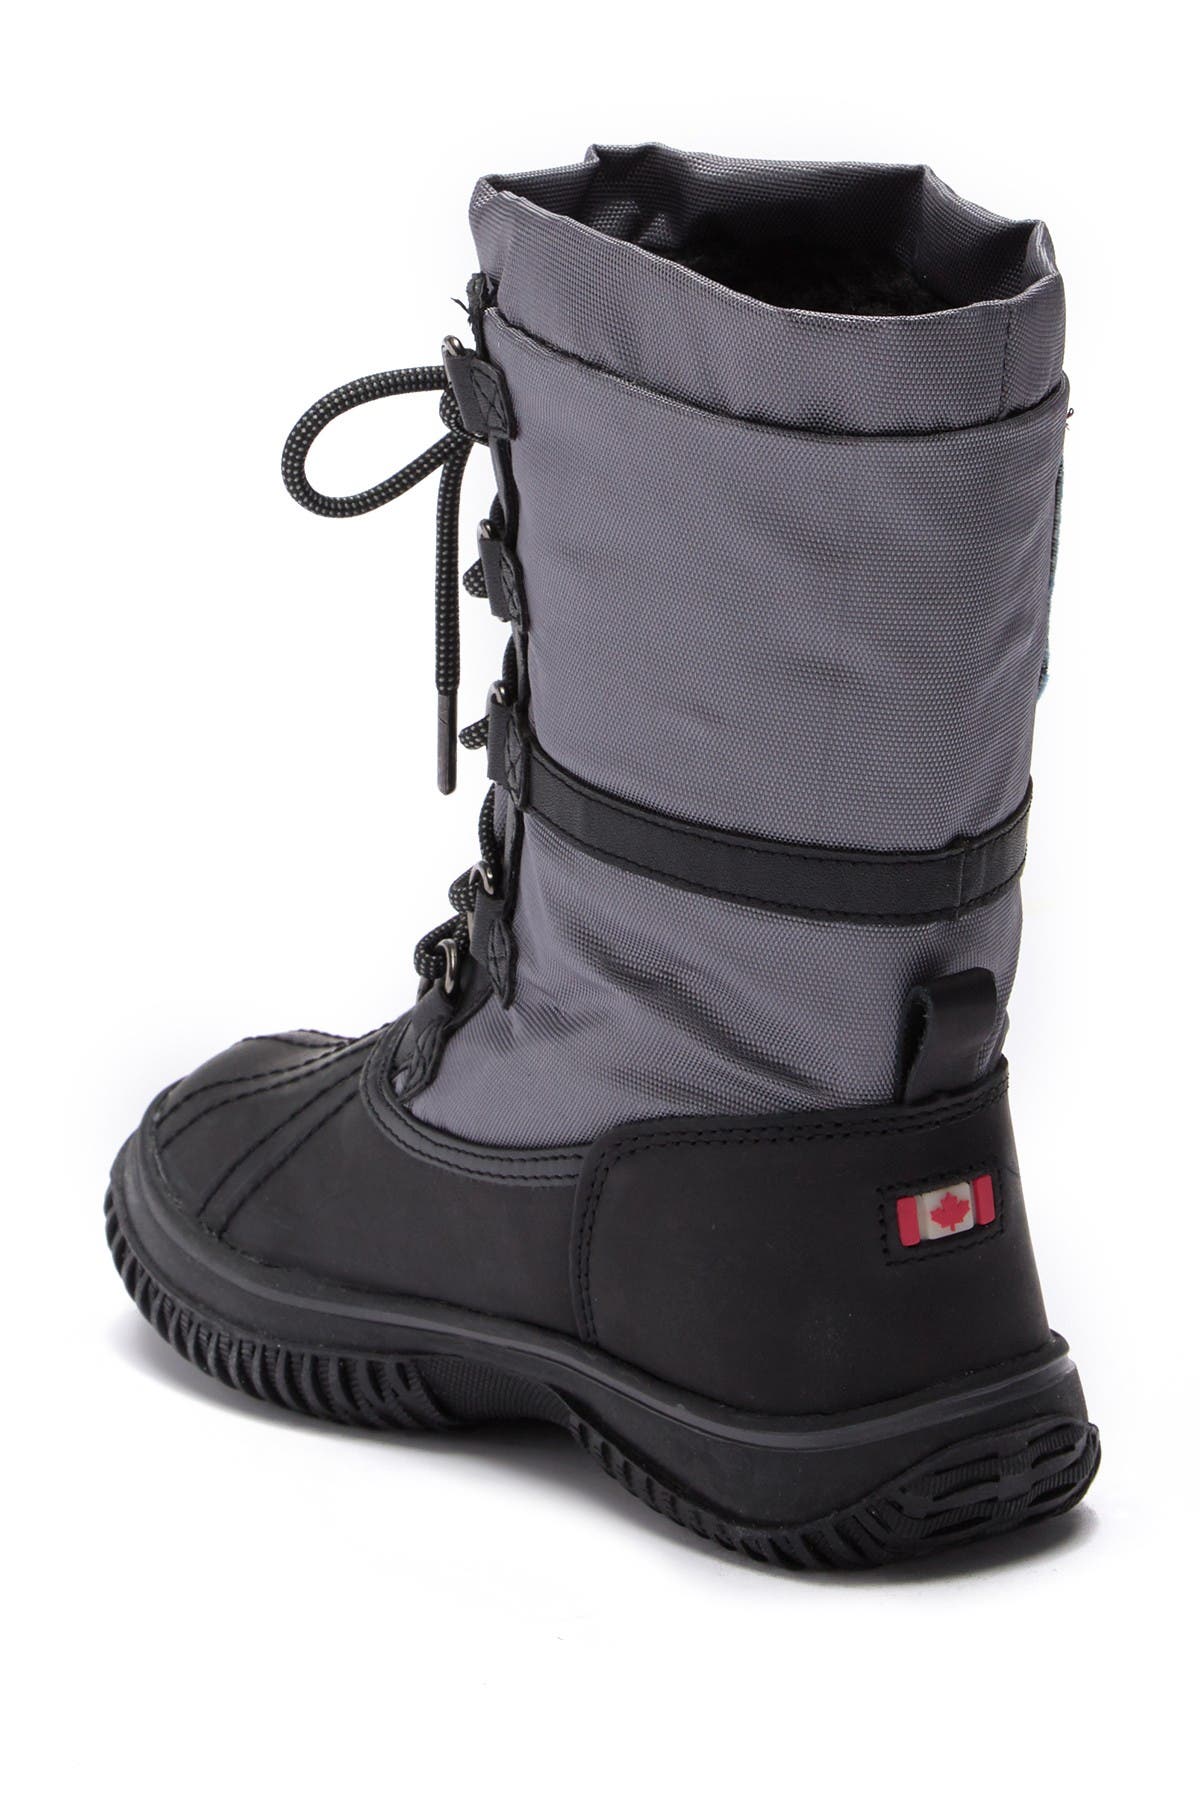 pajar grip low faux fur lined waterproof boot